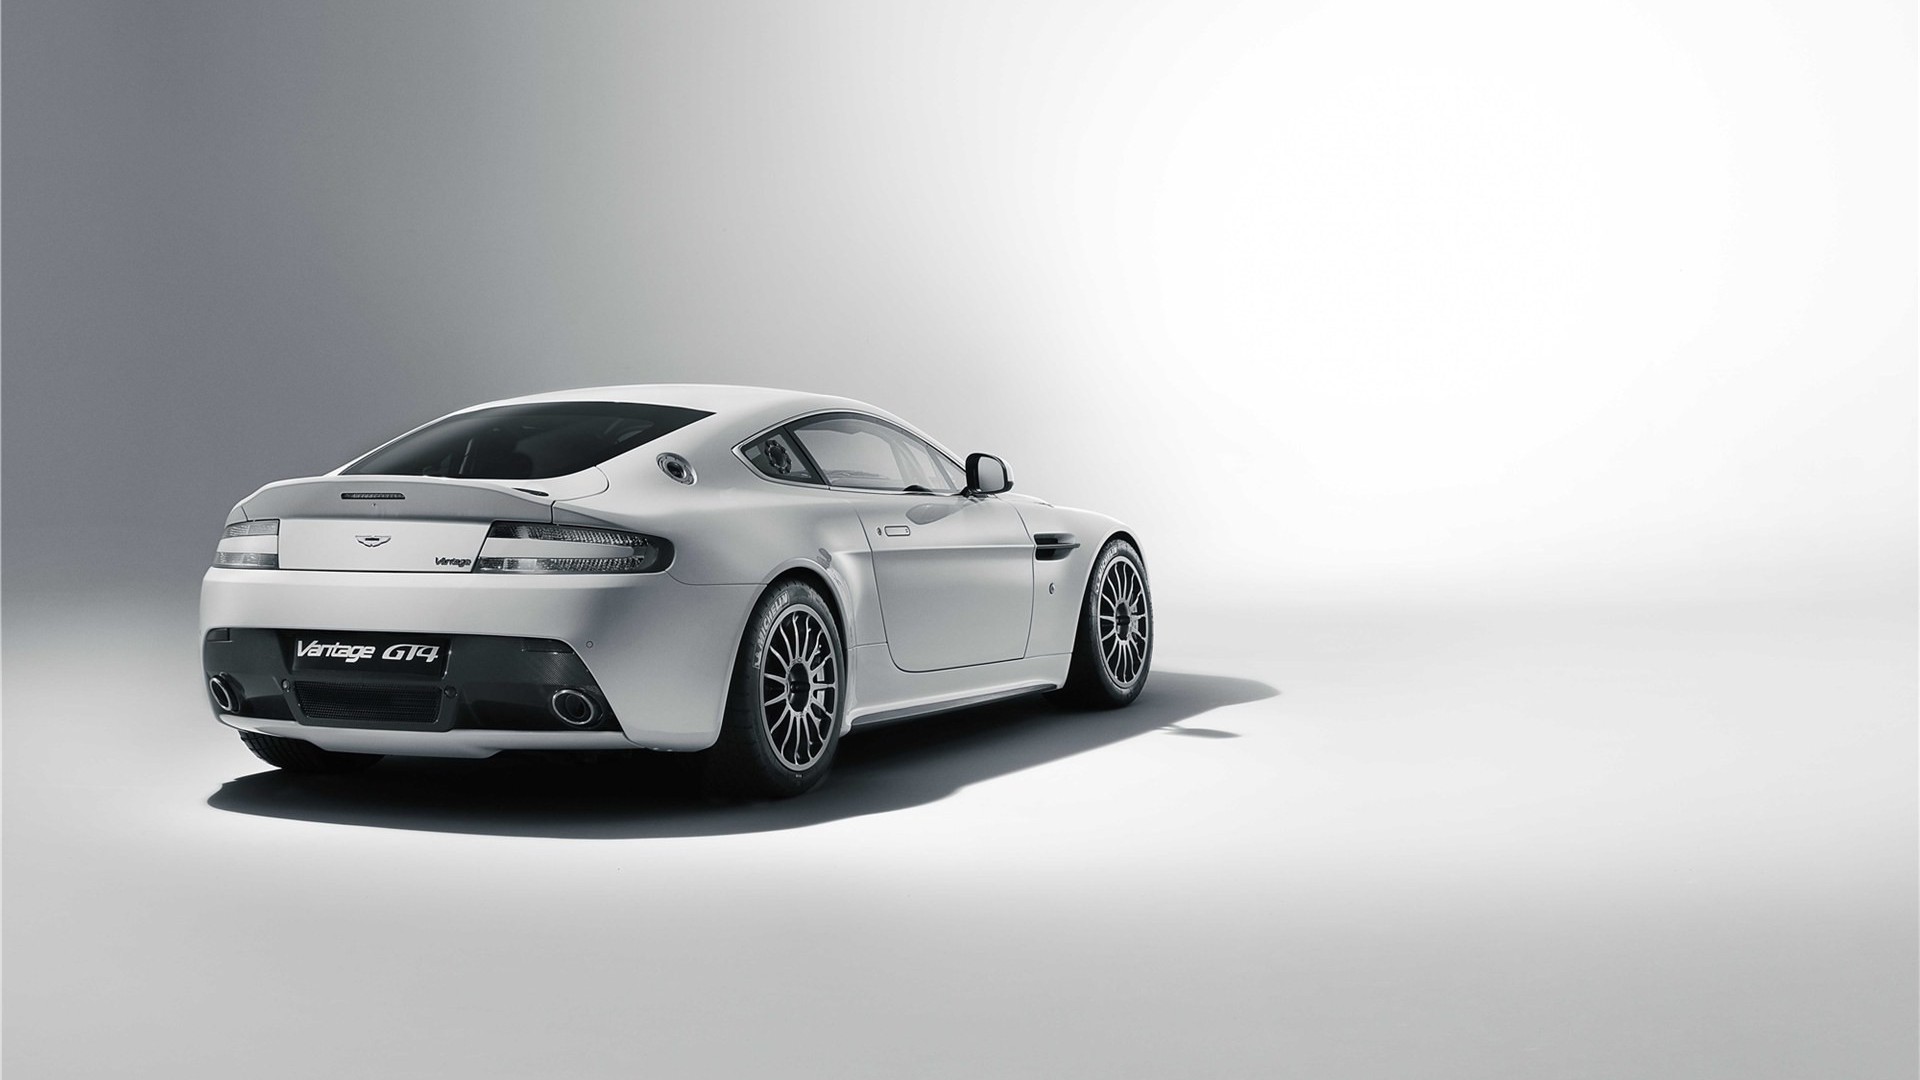 Laden Sie Aston Martin Vantage Gt4 HD-Desktop-Hintergründe herunter